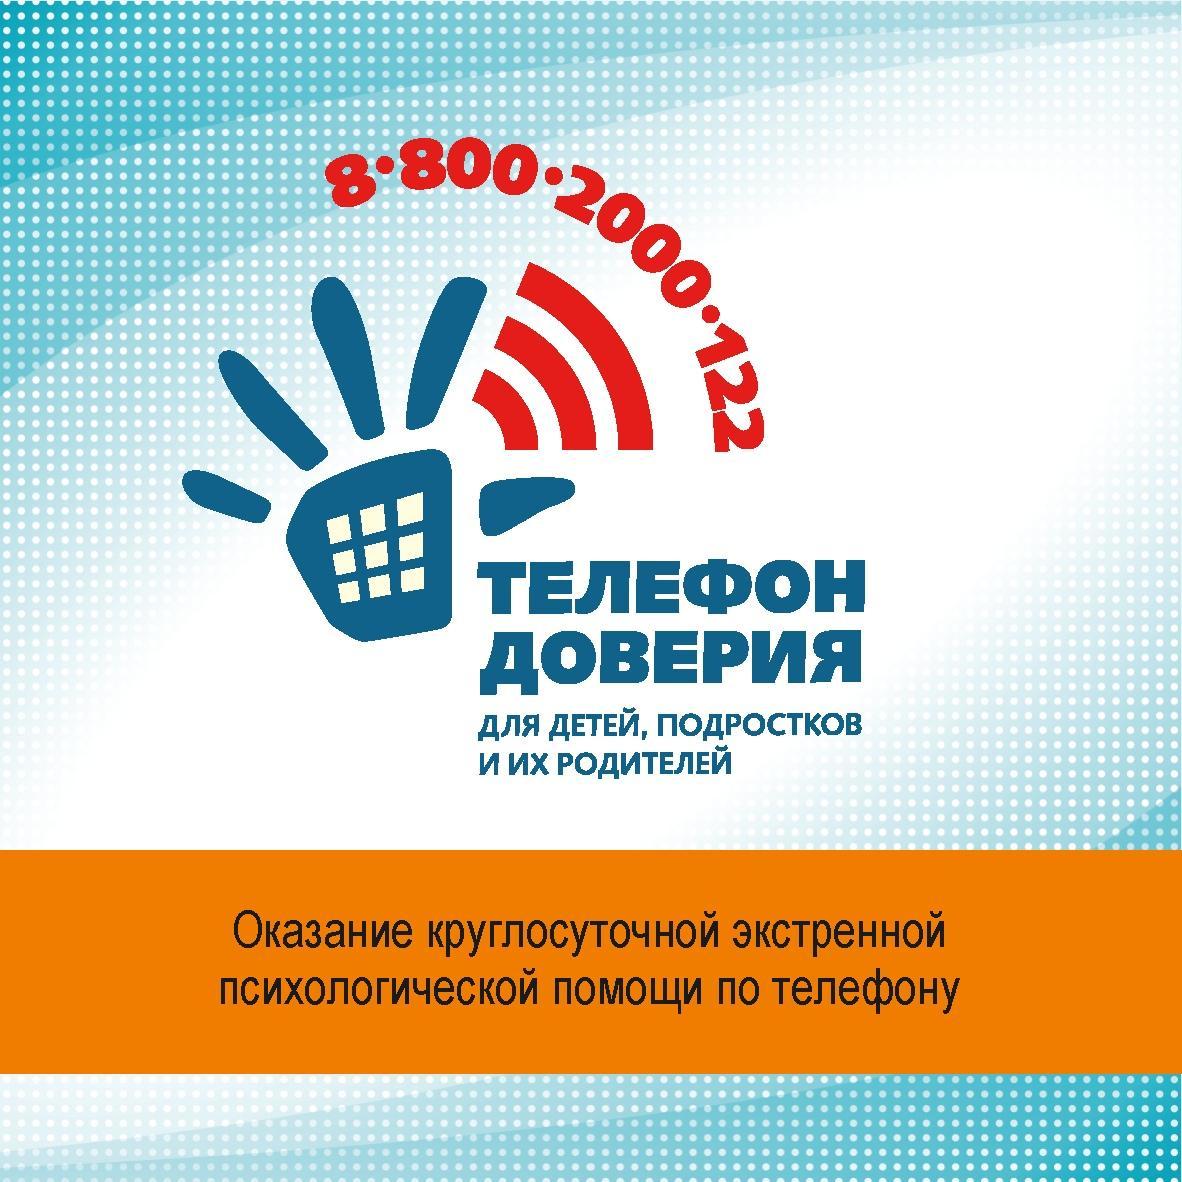 800 телефон доверия. Телефон доверия. Телефон доверия для детей. Телефон доверия для детей подростков и их родителей. Телефон доверия в Крыму.